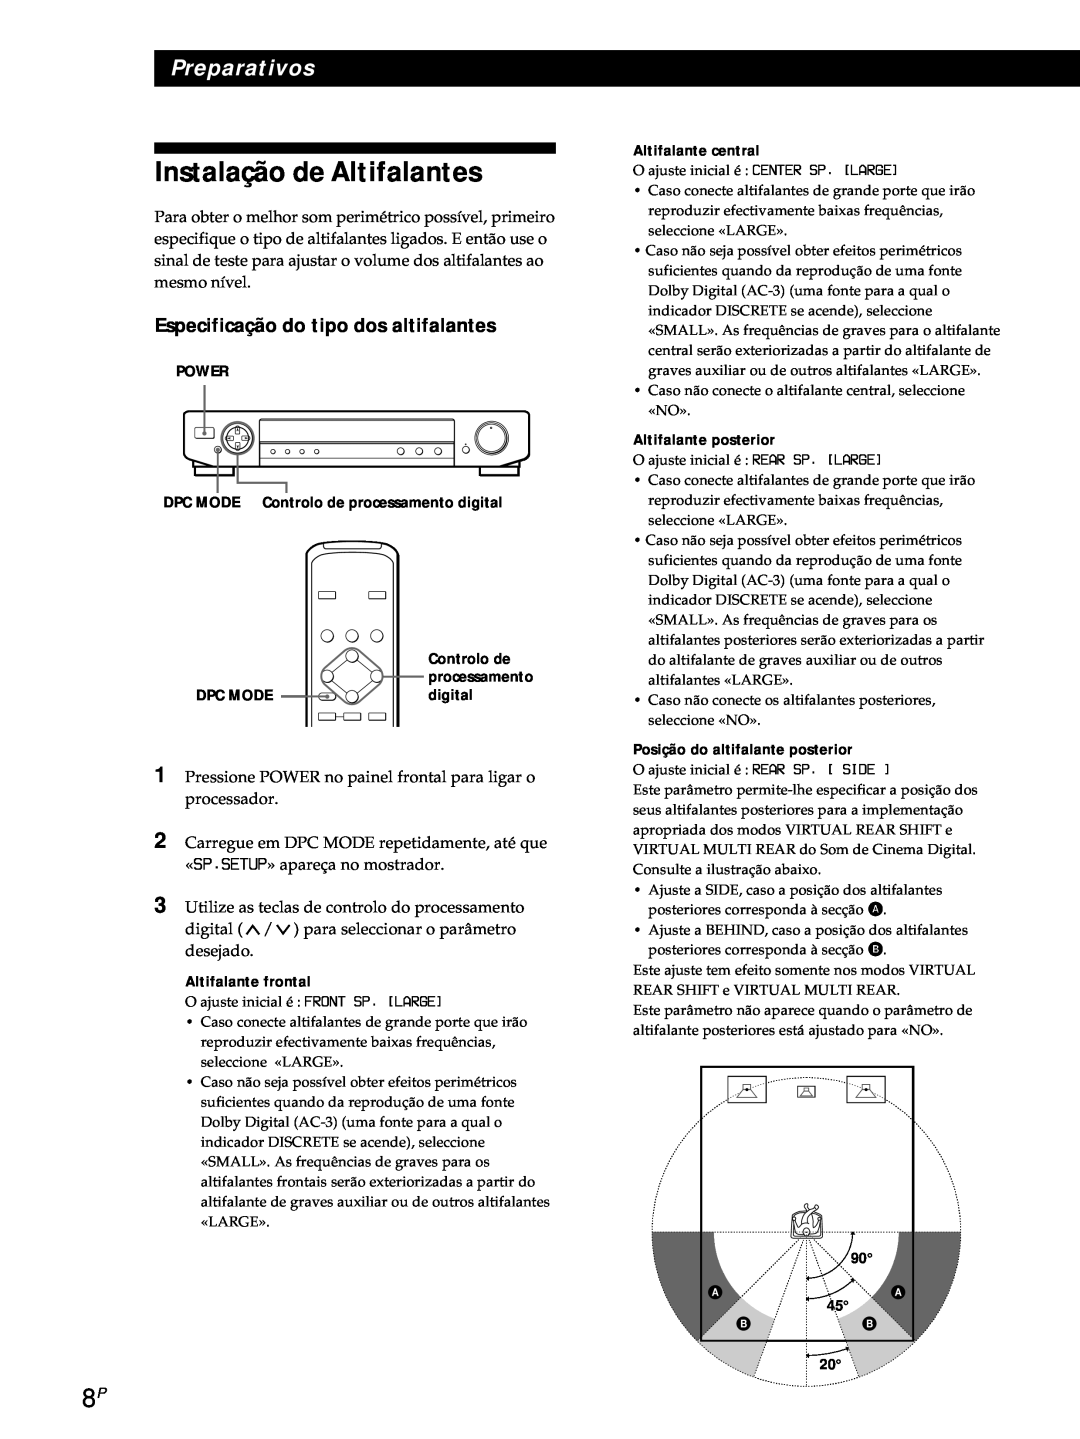 Sony SDP-E800 operating instructions Instalação de Altifalantes, Especificação do tipo dos altifalantes, Preparativos 